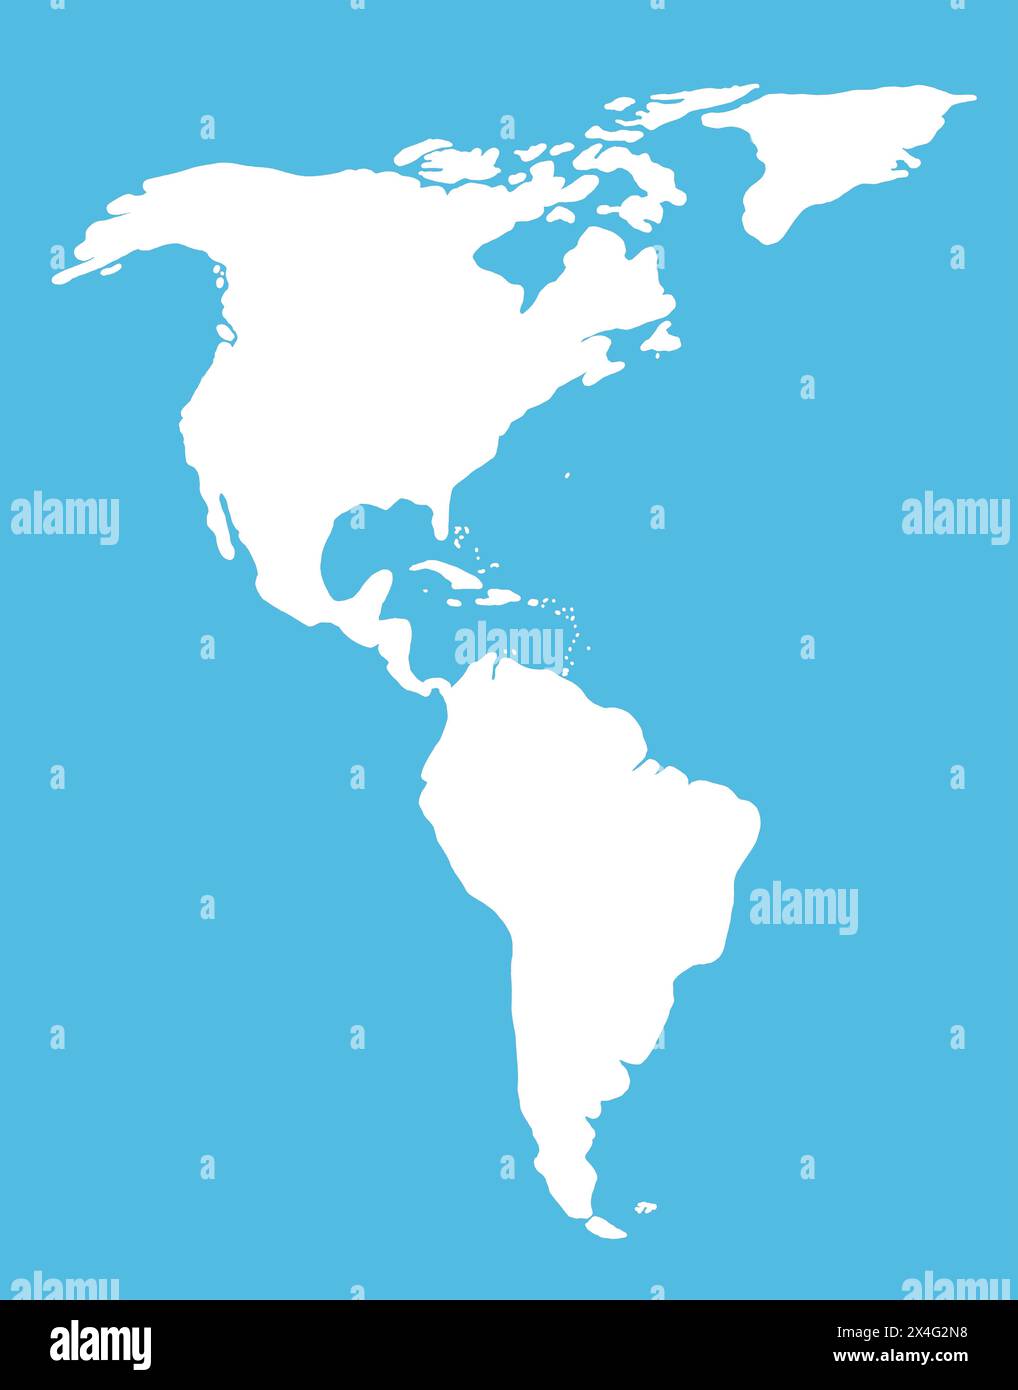 Silhouette bianca del Sud e del Nord America su sfondo blu. Illustrazione della mappa del mondo con i continenti americani. Foto Stock